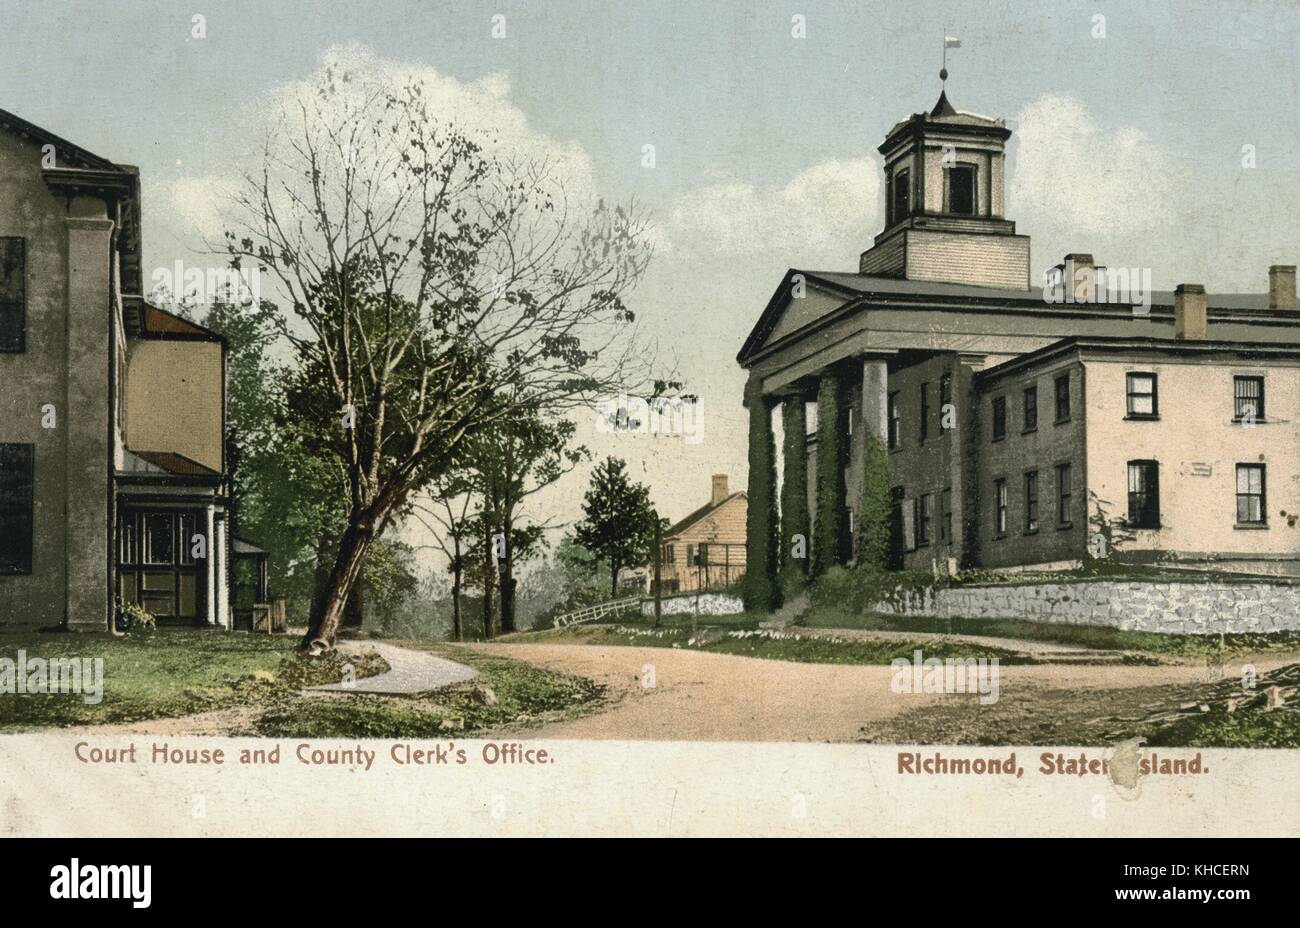 Cartolina colorata che mostra il tribunale e l'ufficio del Clerk della contea, Richmond, Staten Island, New York, 1900. Dalla Biblioteca pubblica di New York. Foto Stock